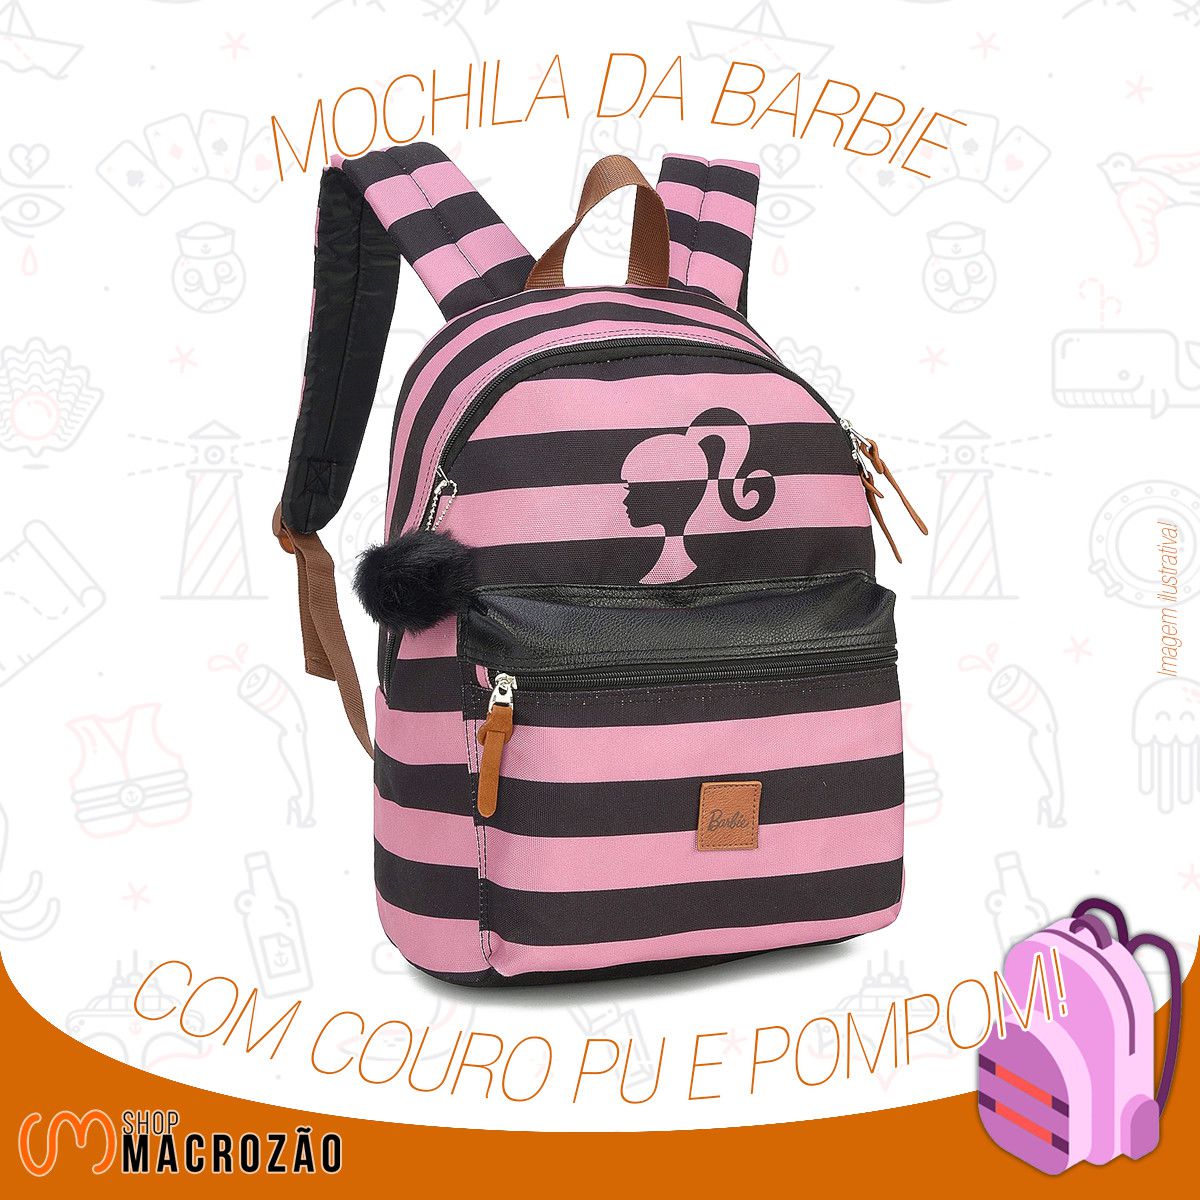 Mochila Barbie Rosa E Preta 45820 Listras - Shop Macrozao